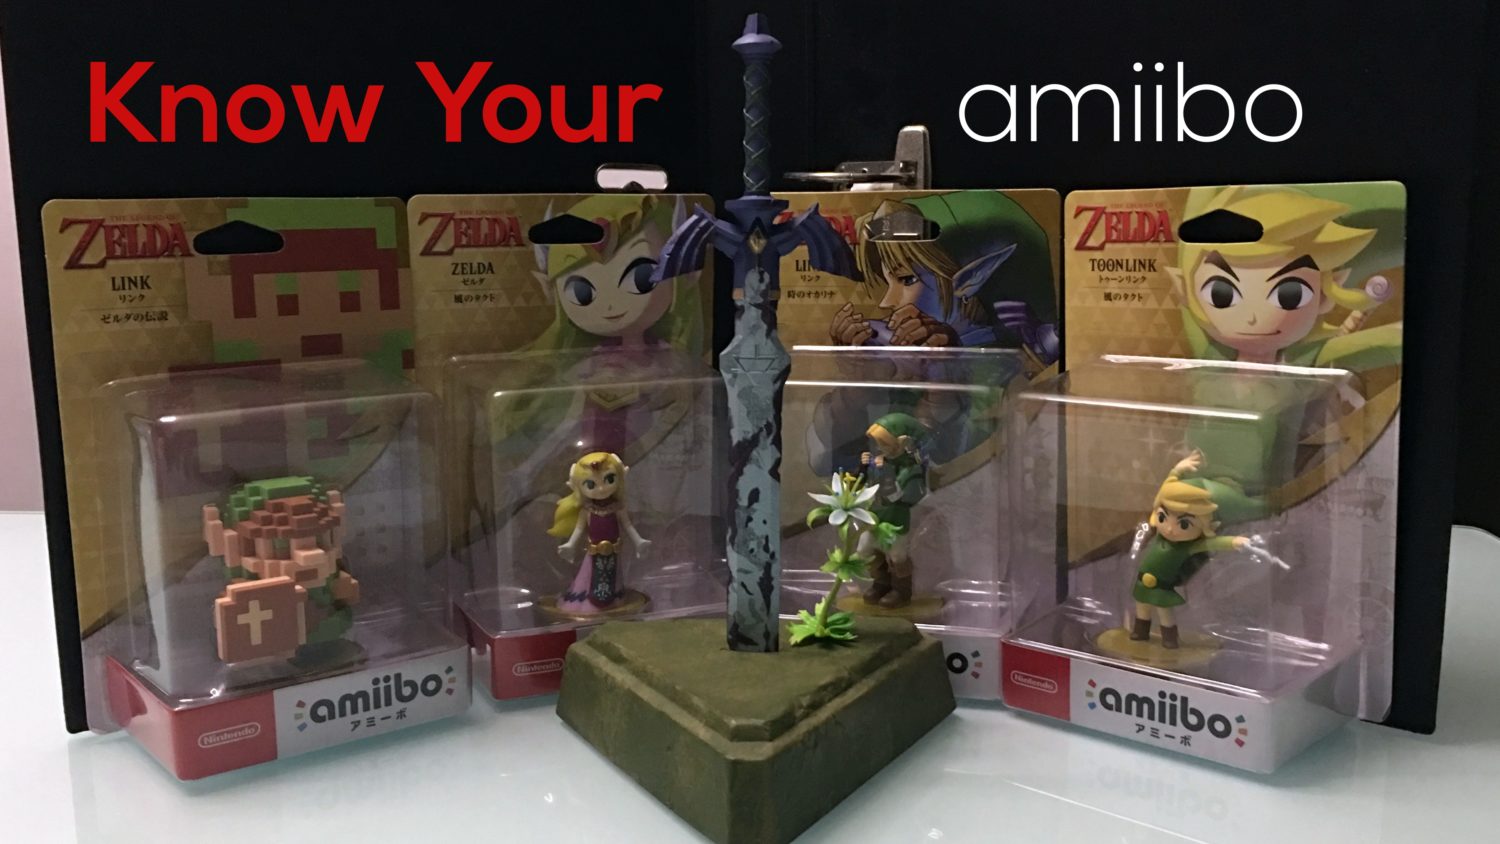 Amiibo Toon Link [Wind Waker] the legend of Zelda series Nintendo 3DS From  JP